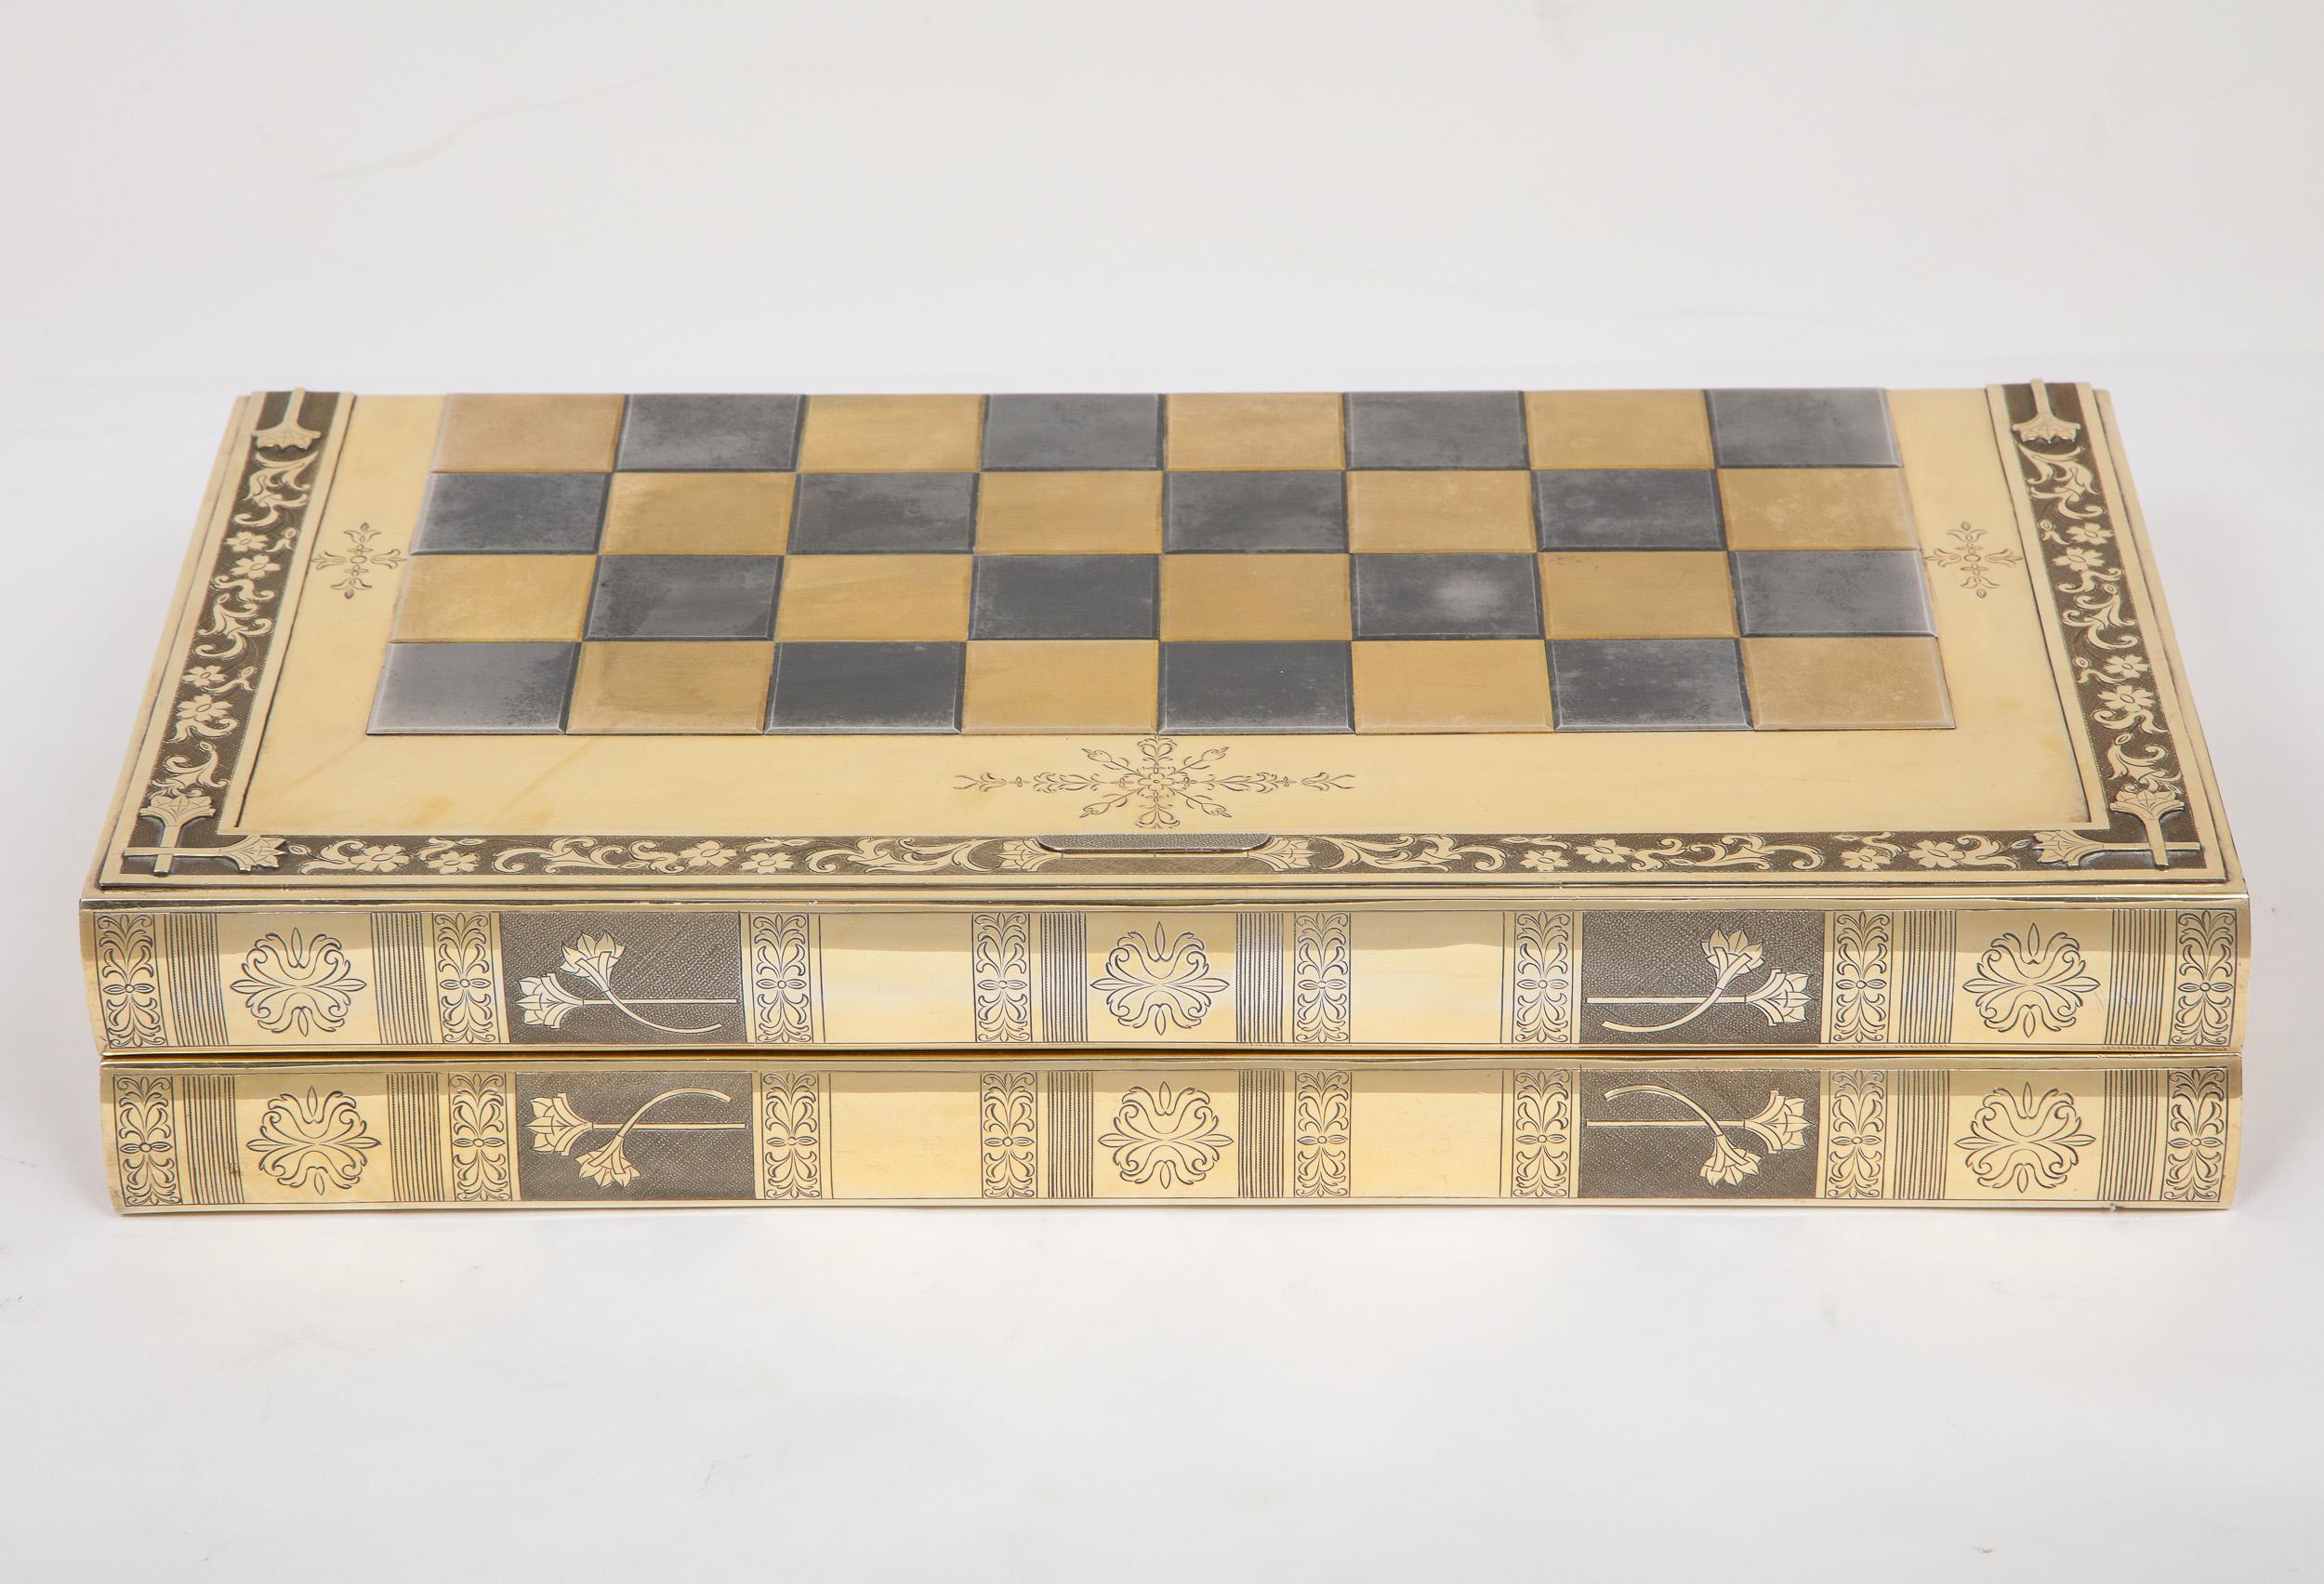 Rare plateau de jeu d'échecs et de backgammon anglais en forme de livre en argent doré, vers 1976.

Cet exceptionnel et rare échiquier en argent massif se transforme en plateau de backgammon et peut également être placé dans une bibliothèque pour